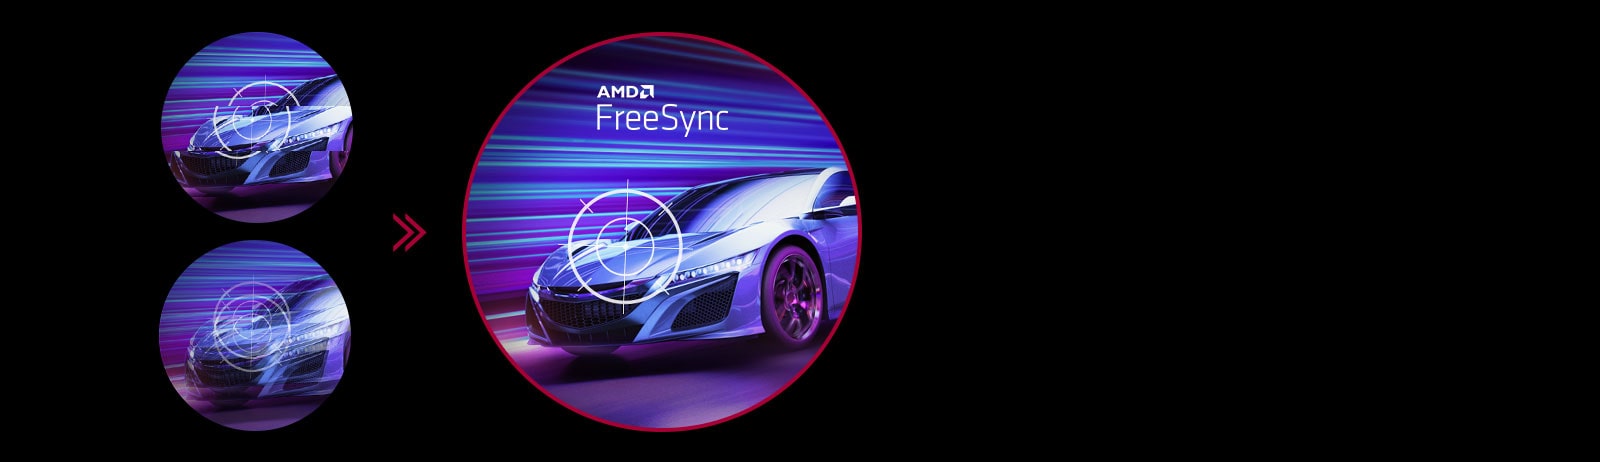 Với công nghệ AMD FreeSync™, người chơi game có thể trải nghiệm chuyển động liền mạch, mượt mà trong những trò chơi có độ phân giải cao và tốc độ nhanh. Công nghệ này giúp giảm hiện tượng trộn hình và giật hình.